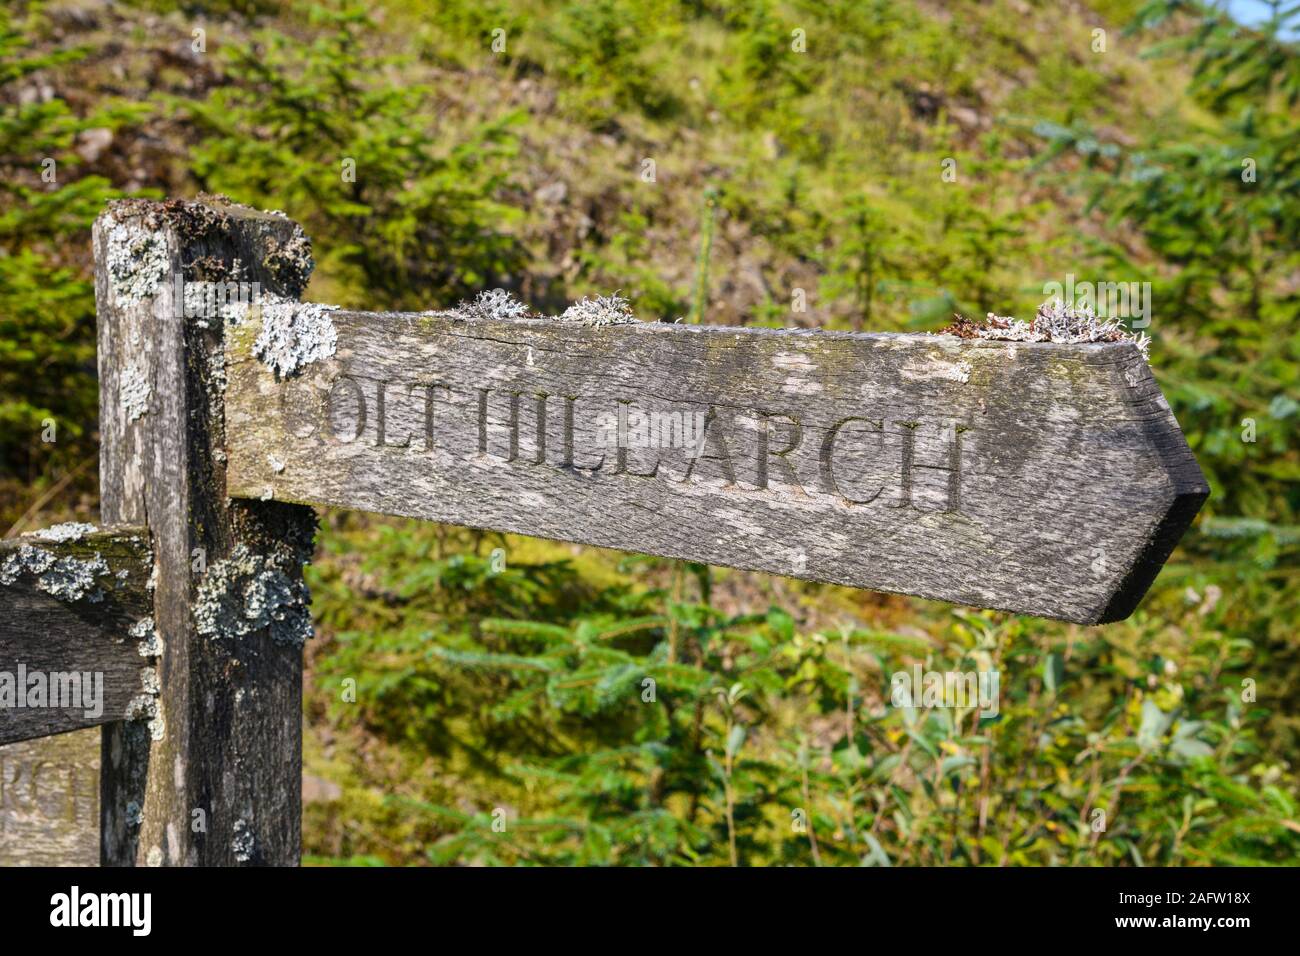 Lichen couvrait le panneau de sentier menant aux Arches, Dumfries et Galloway, en Écosse Banque D'Images